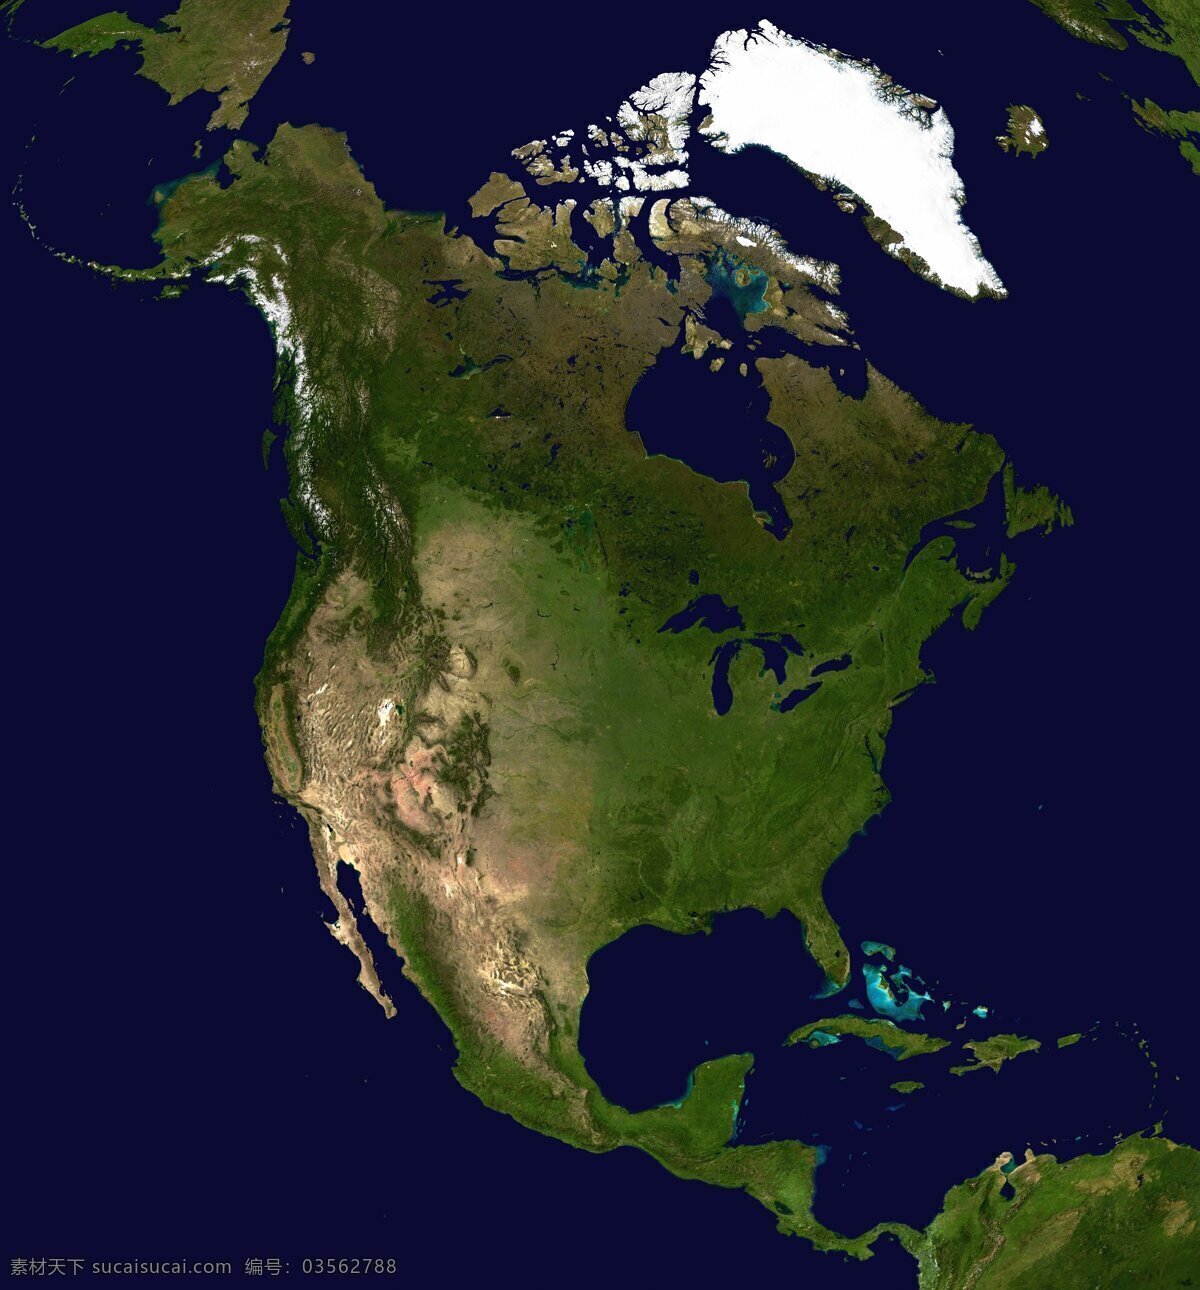 北美洲地形图 北美洲 卫星 地形 地形图 设计图库